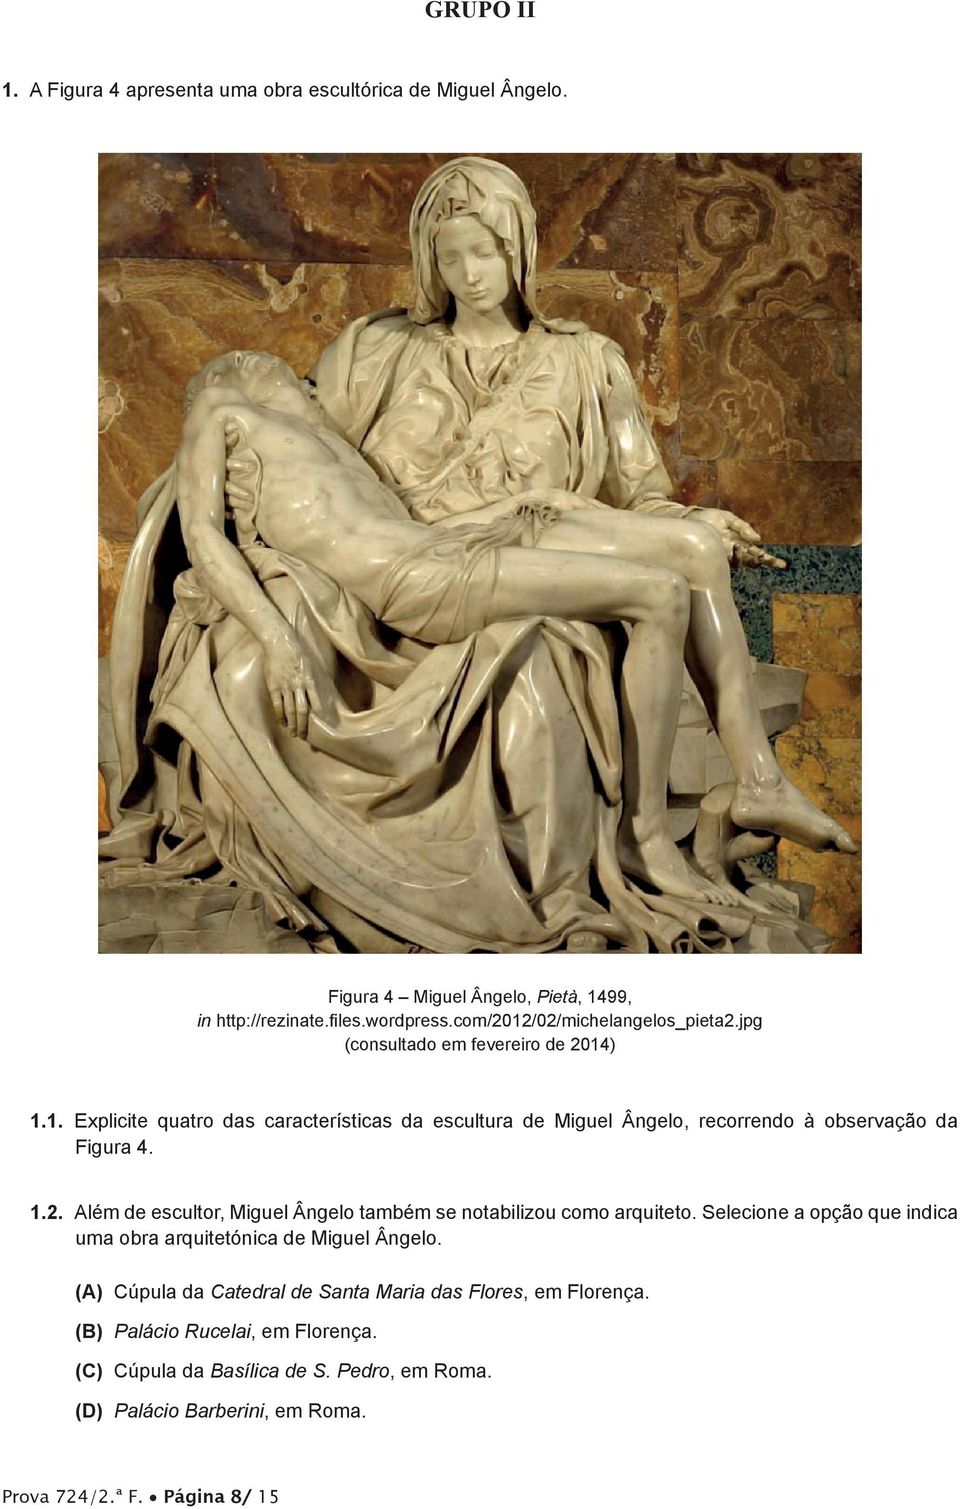 1.2. Além de escultor, Miguel Ângelo também se notabilizou como arquiteto. Selecione a opção que indica uma obra arquitetónica de Miguel Ângelo.